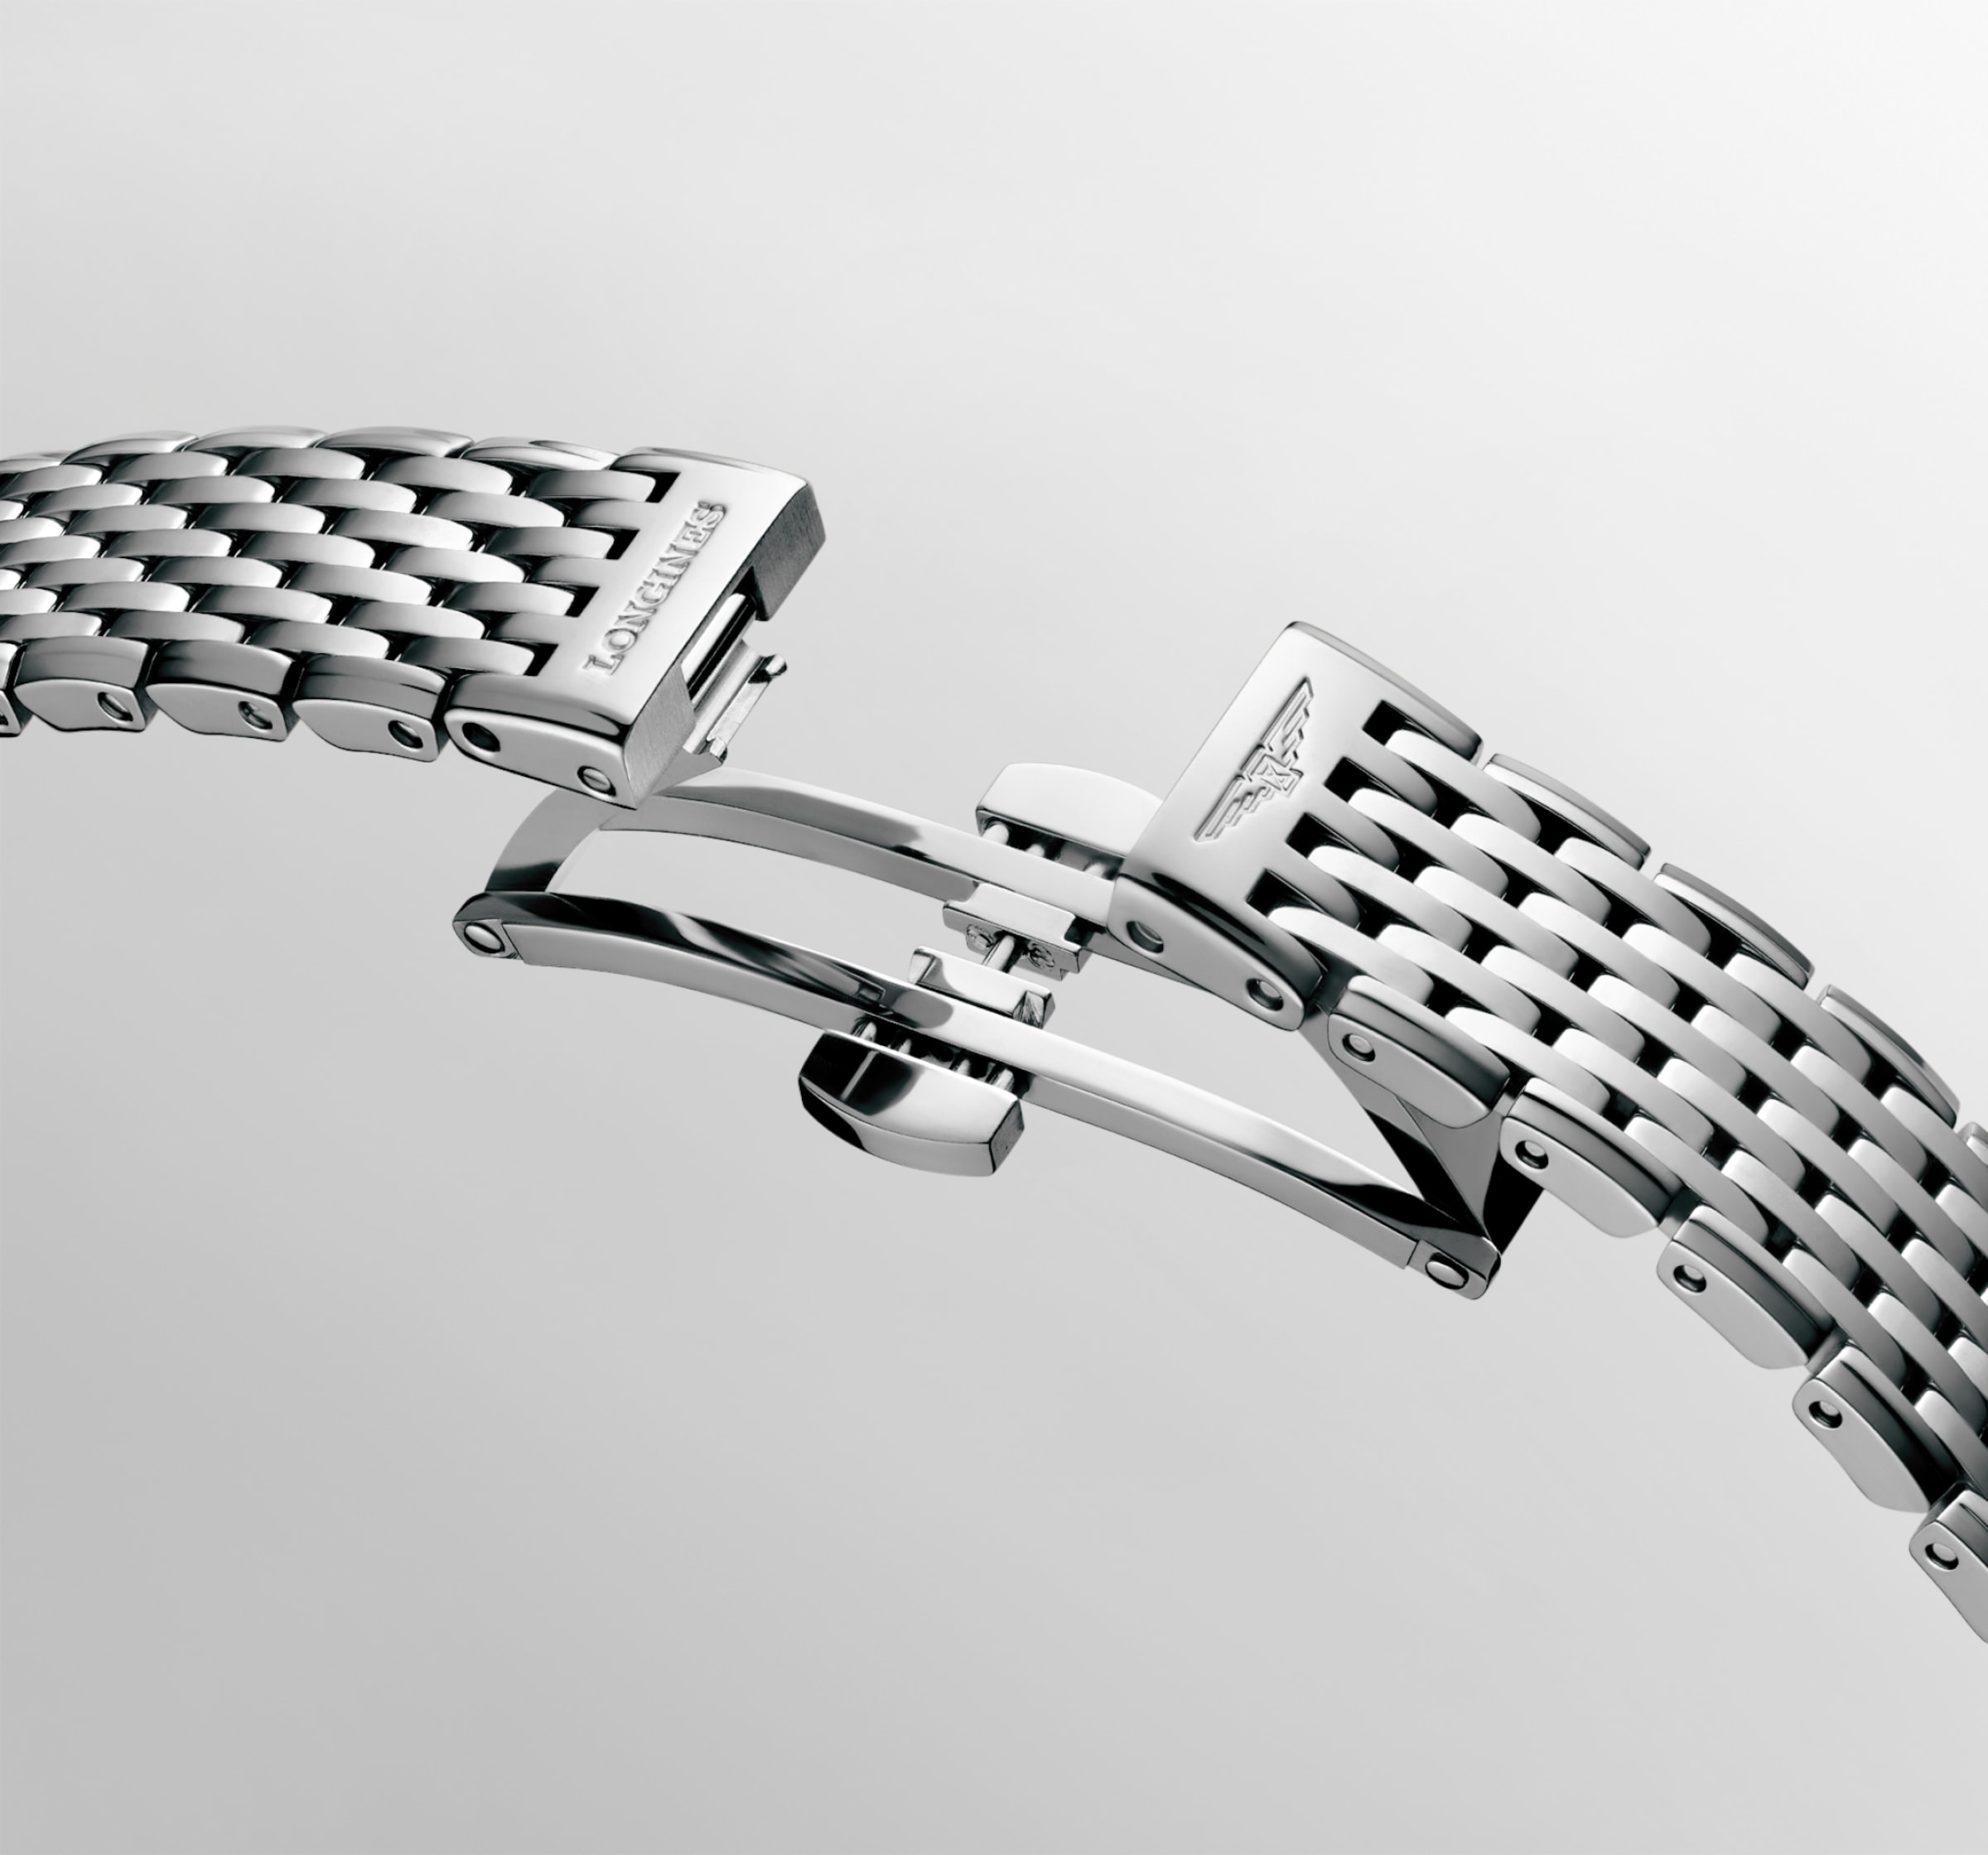 Longines LA GRANDE CLASSIQUE DE LONGINES Quartz Stainless steel Watch - L4.209.4.81.6